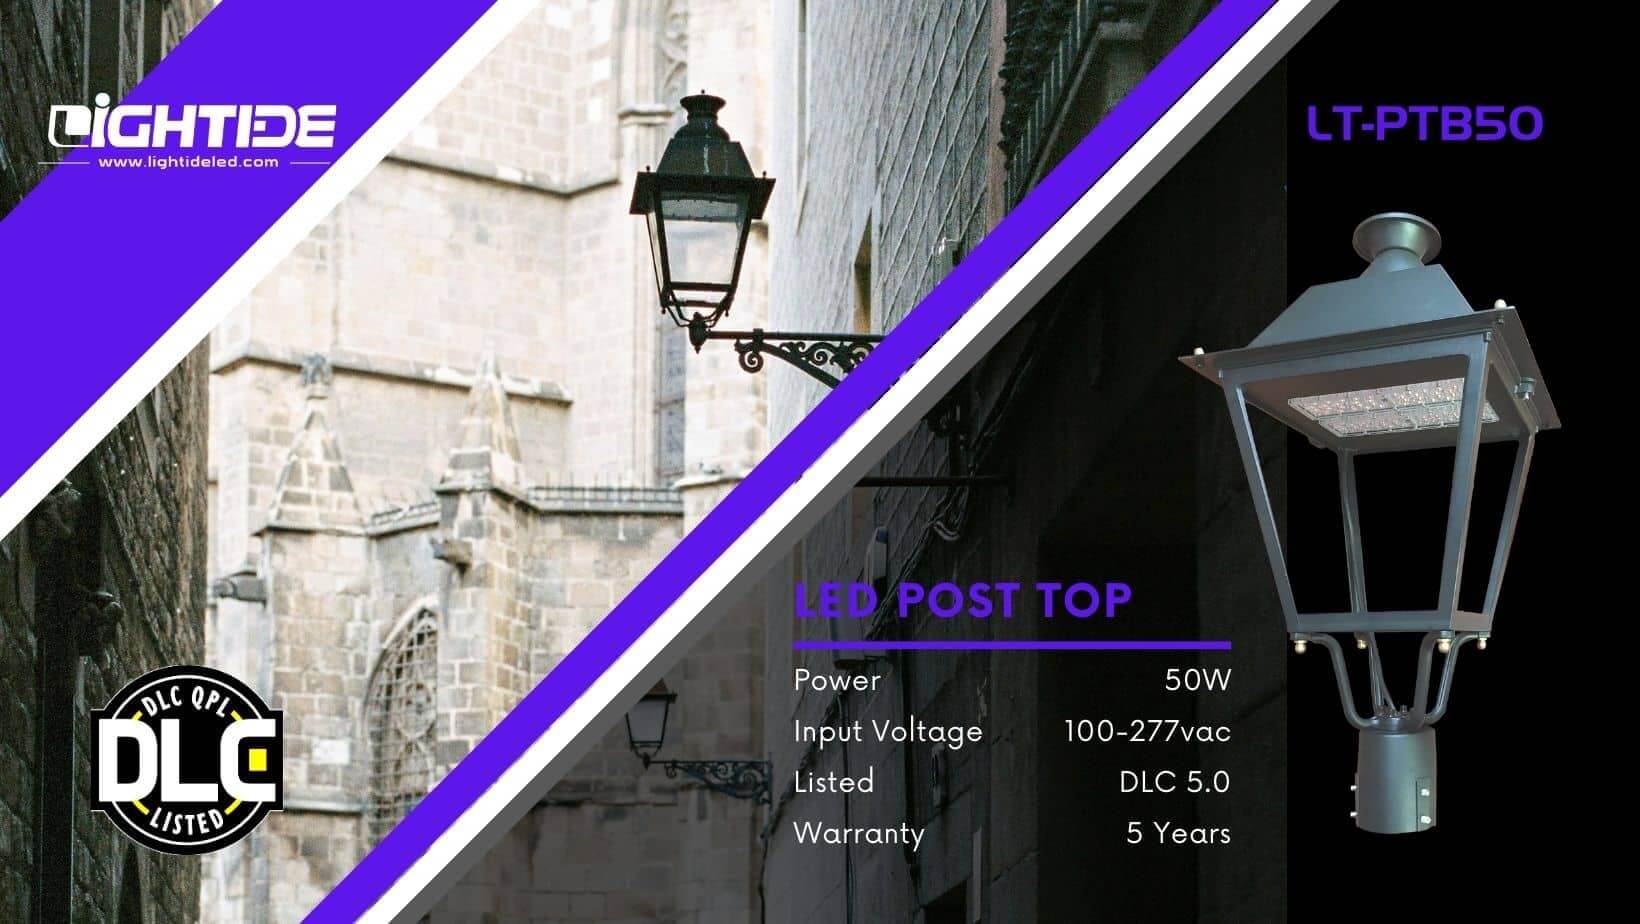 Lightide DLC led Post Top Light_street light PTB50